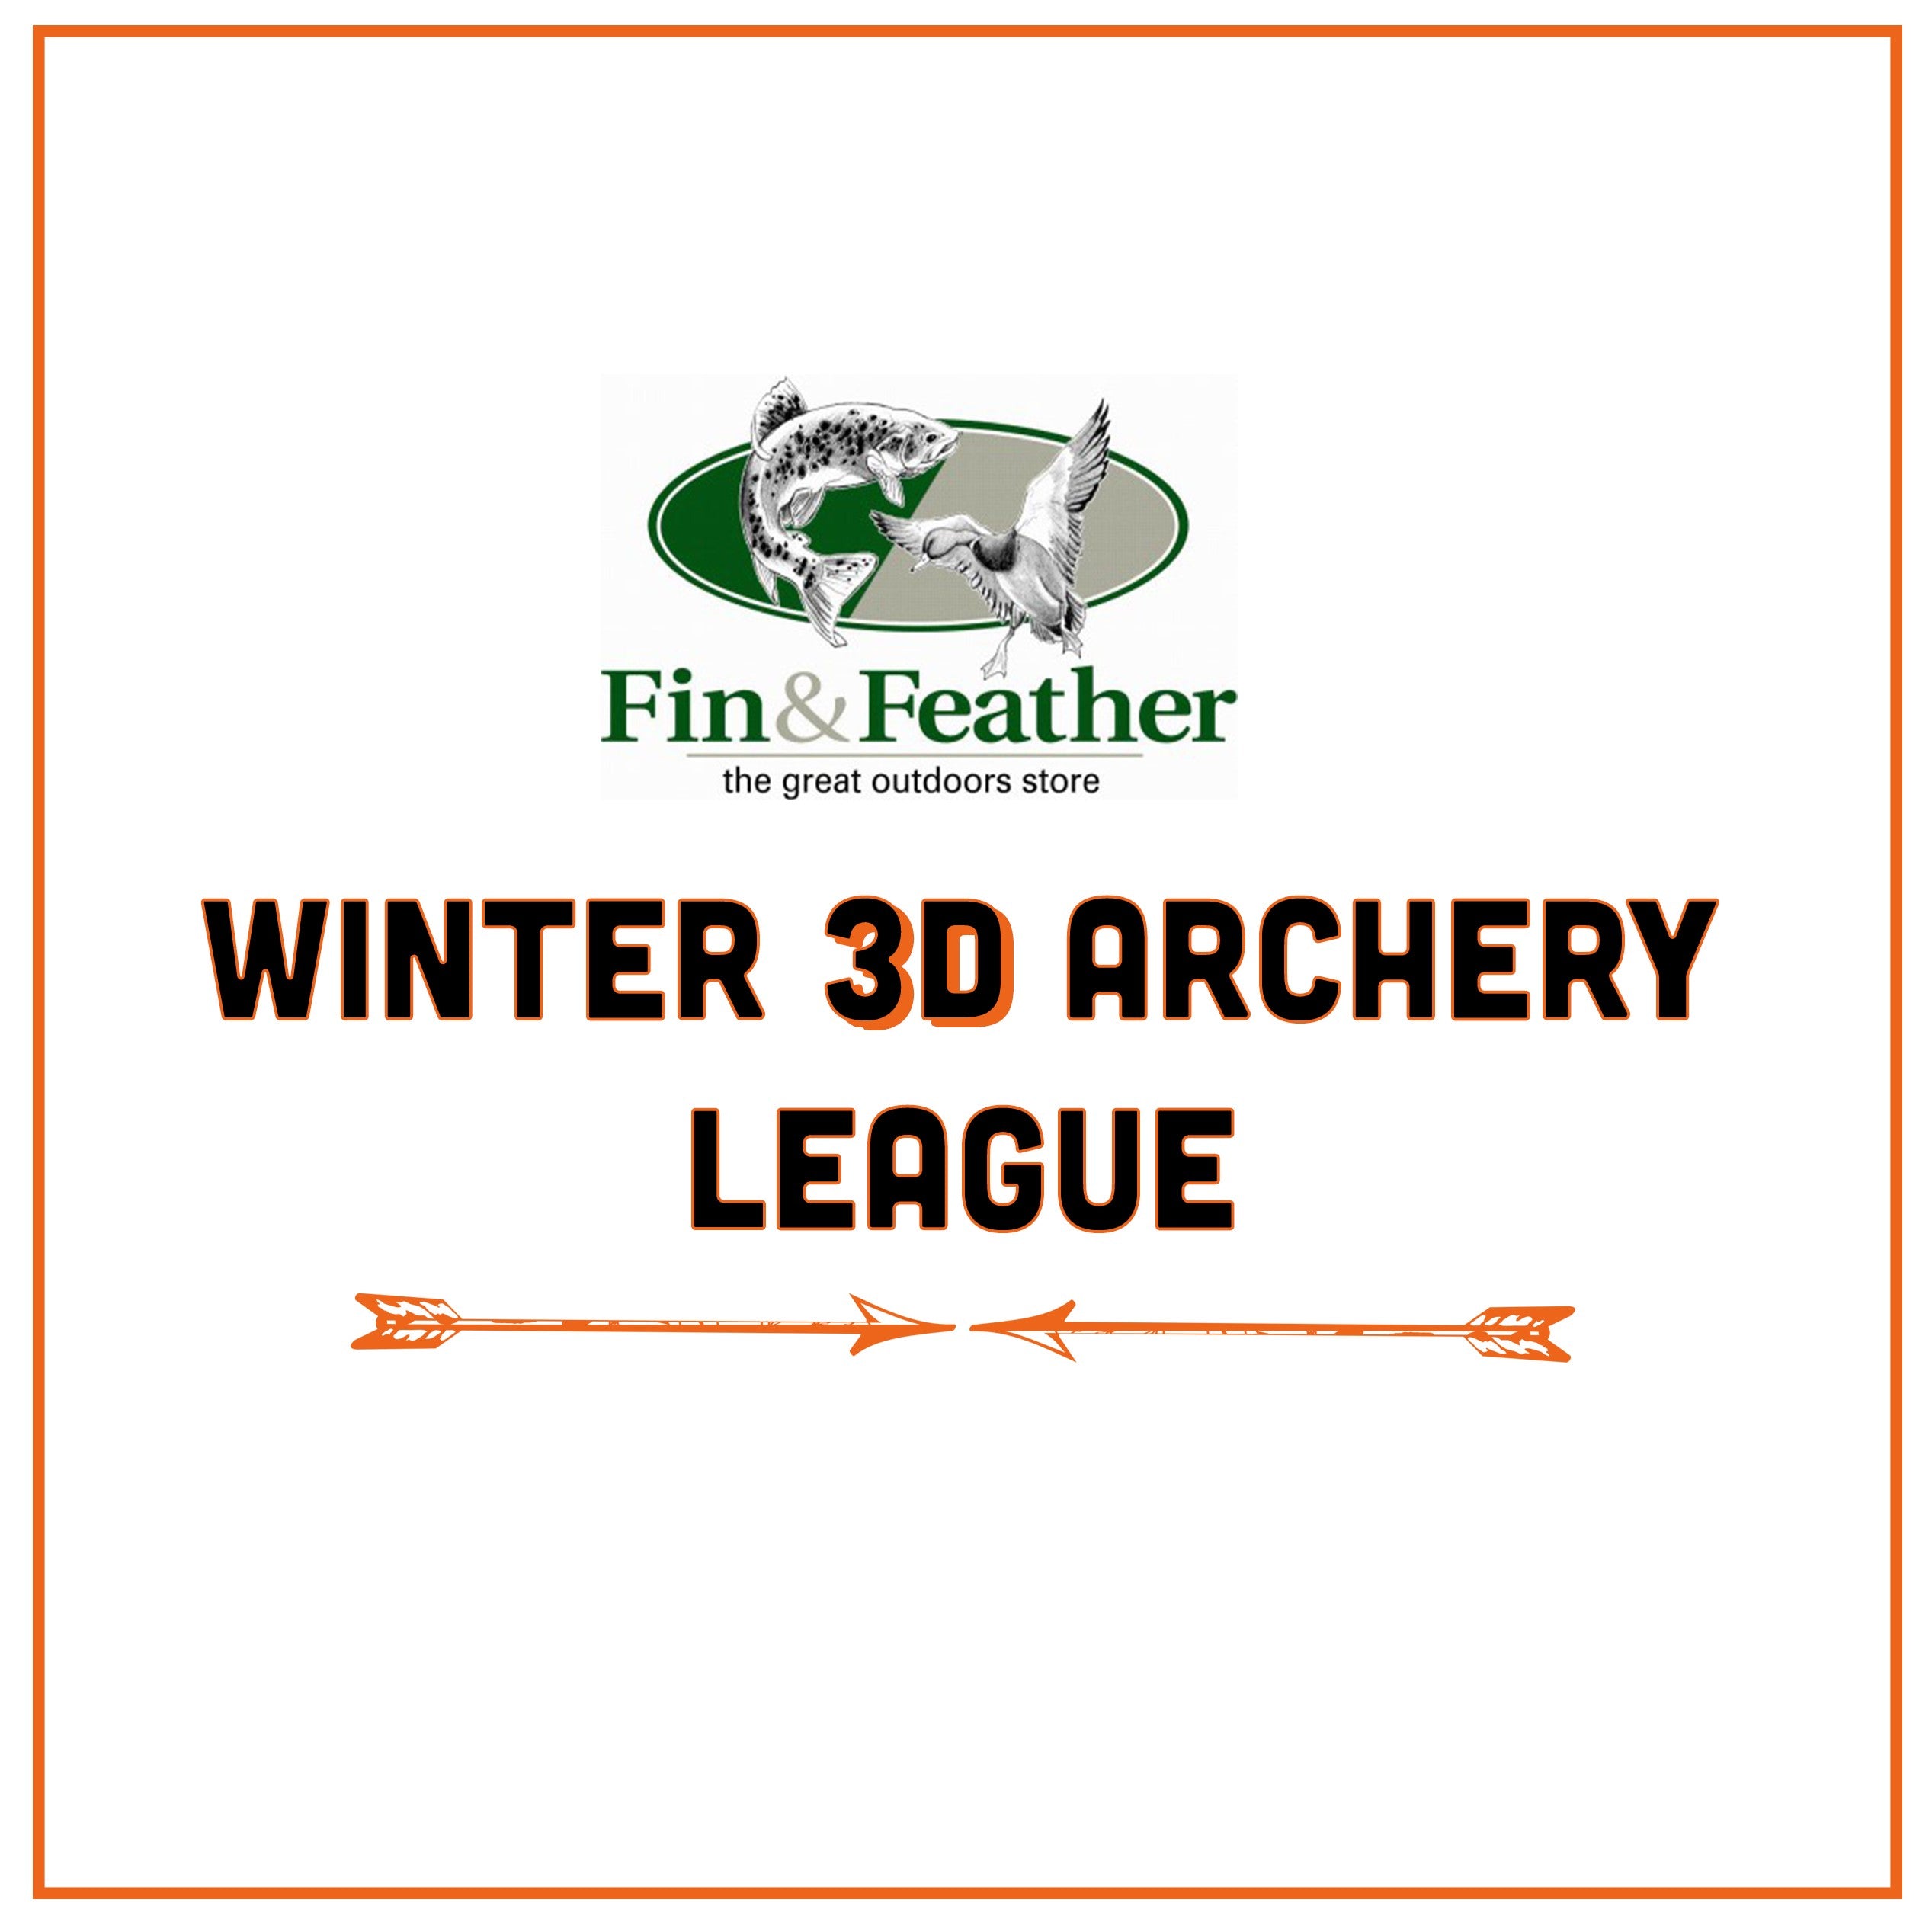 Winter 3D Archery League